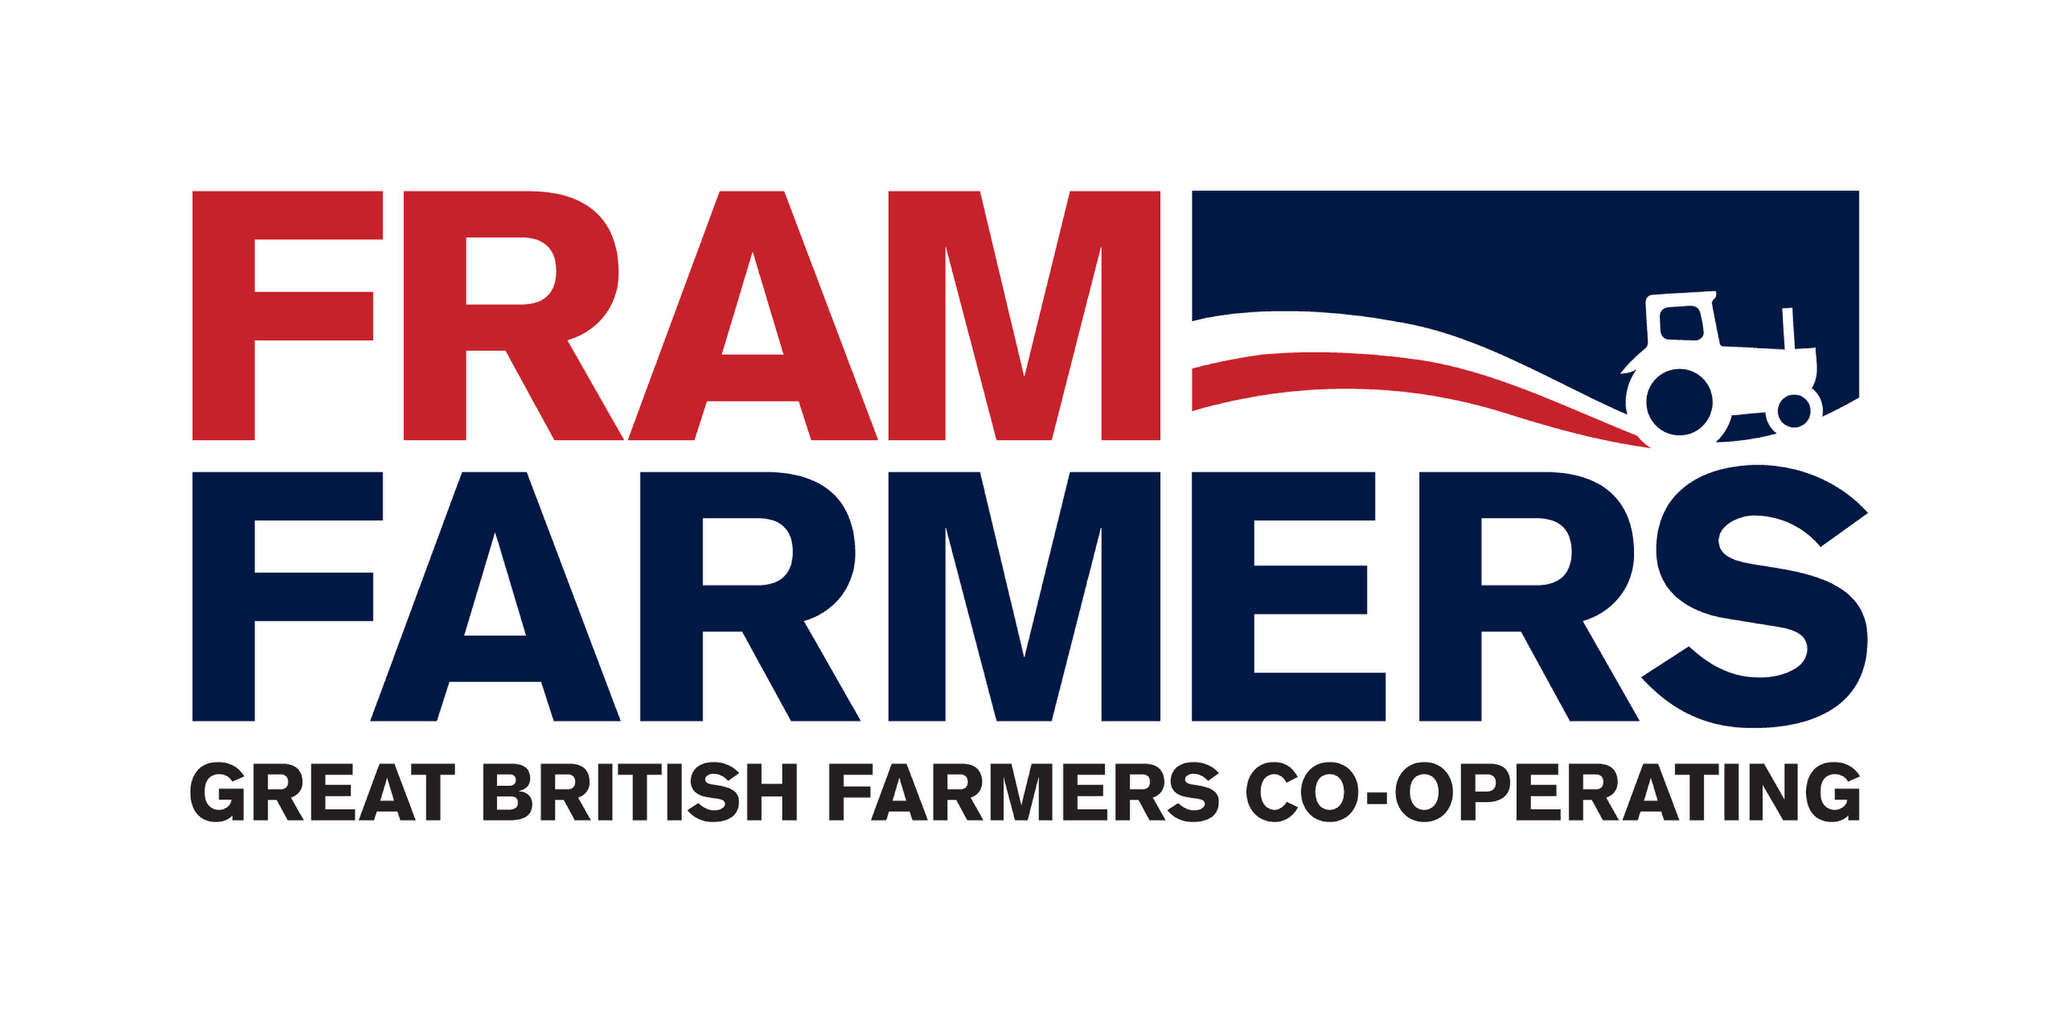 FRAM FARMERS